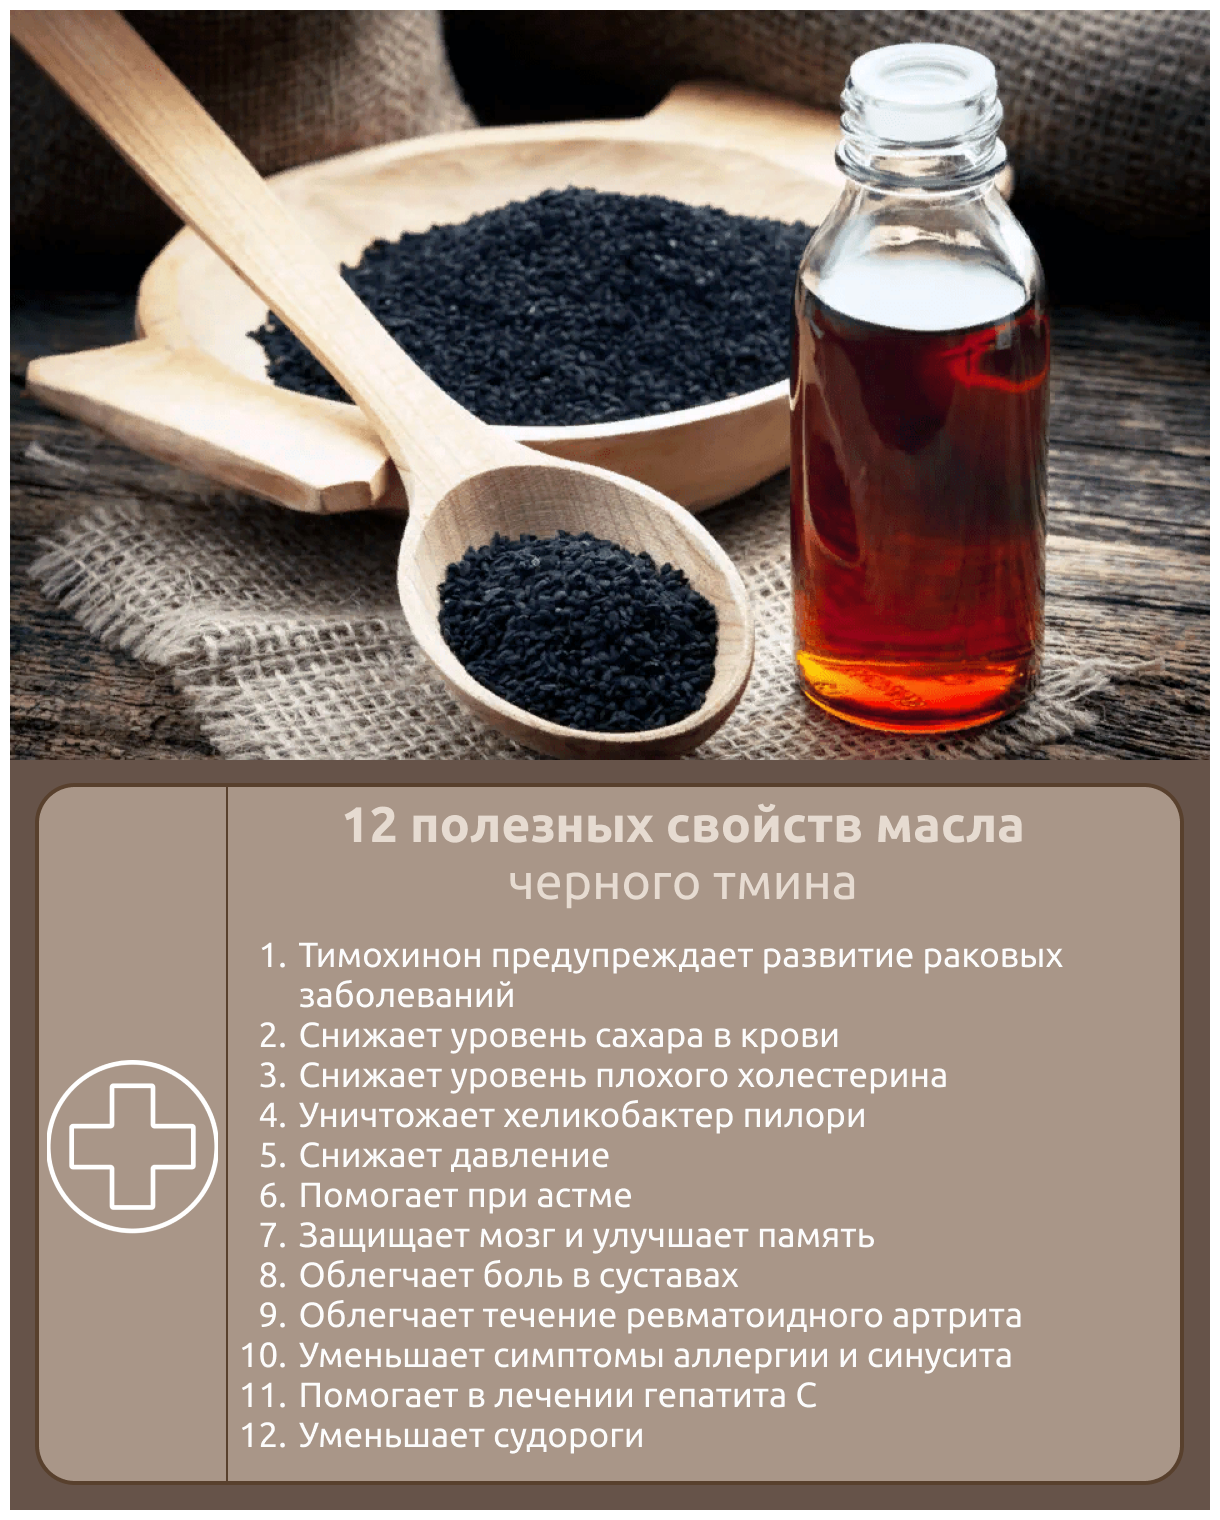 Как использовать масло черного